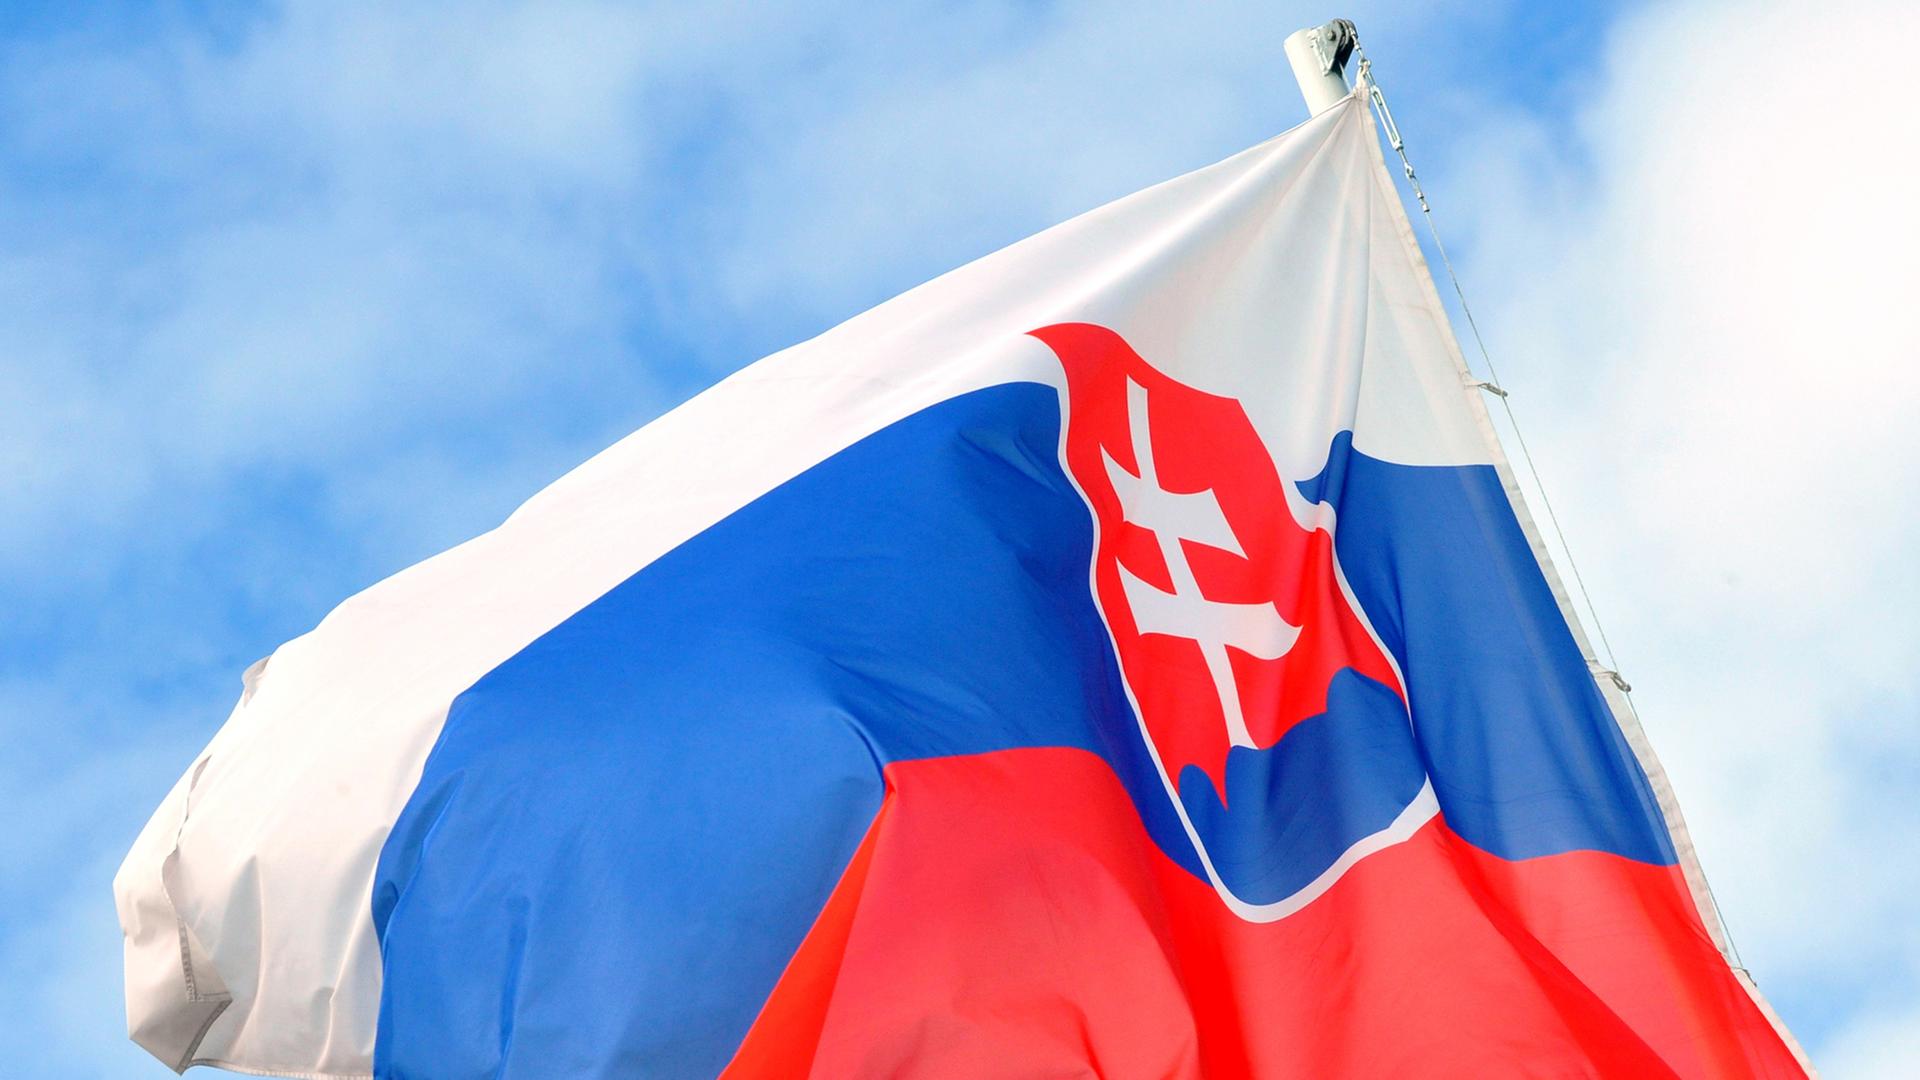 Die wehende Fahne der Slowakei. Im Hintergrund: Himmel